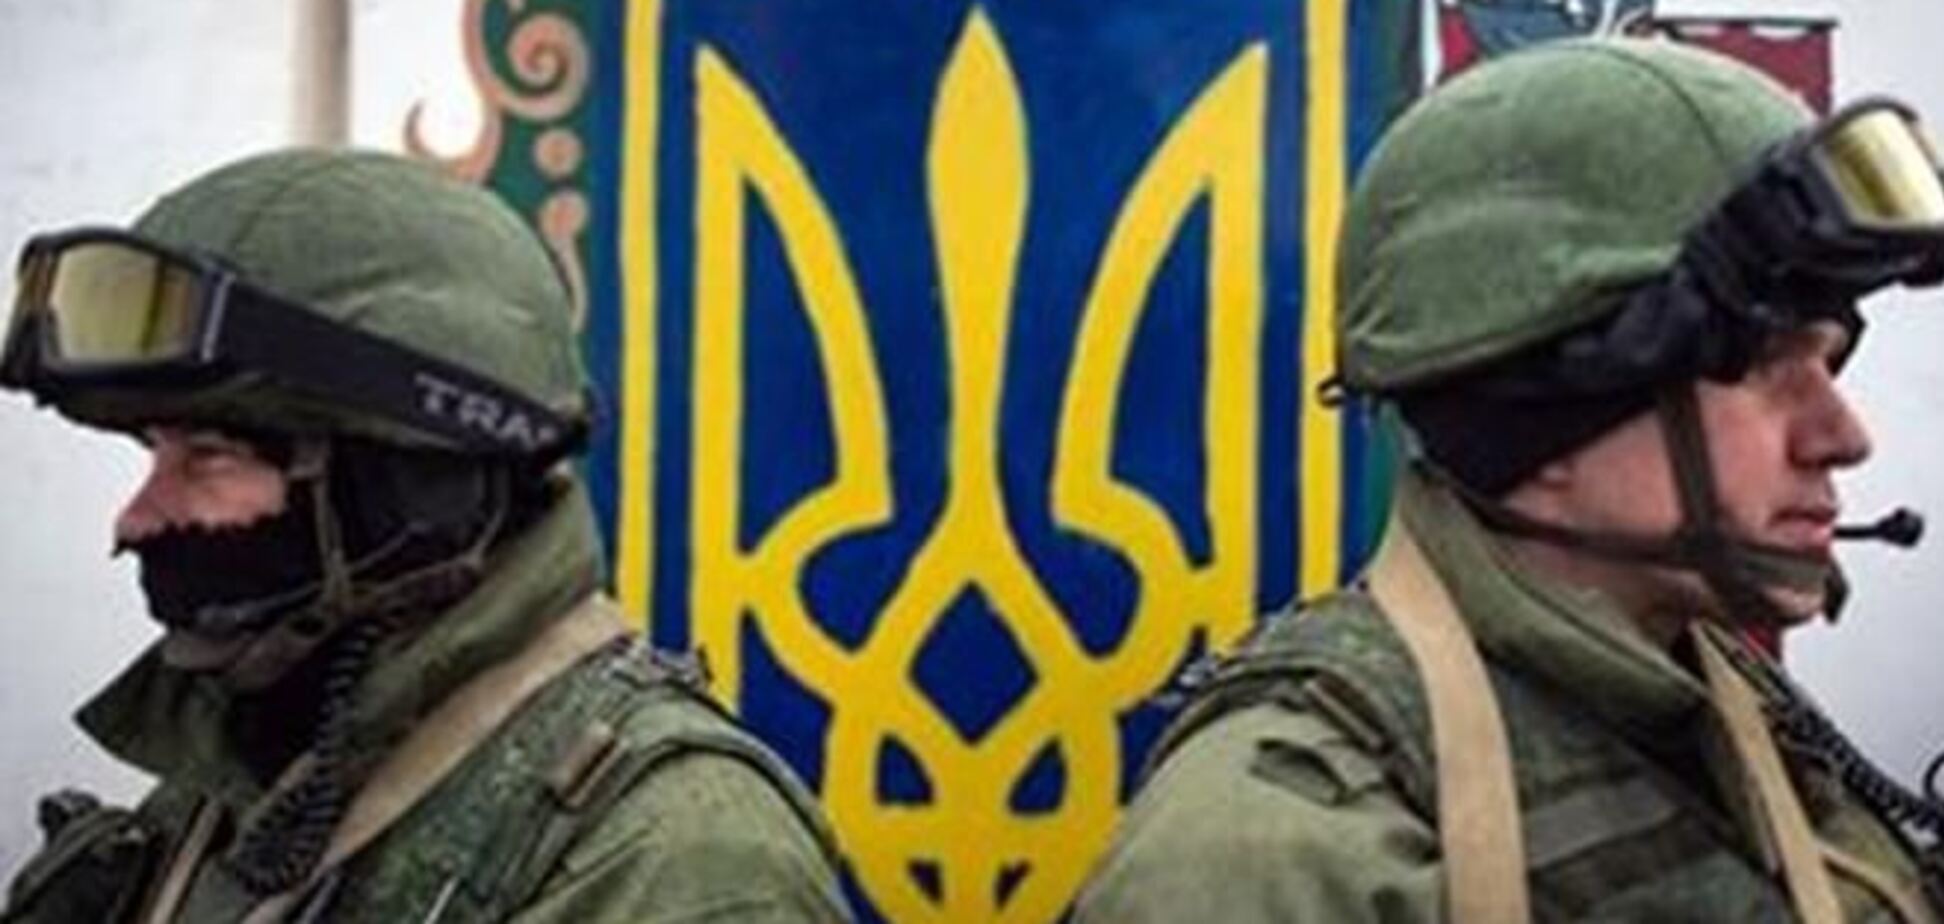 УкрСиббанк не намерен закрывать отделения в Крыму и готов открыть российский филиал